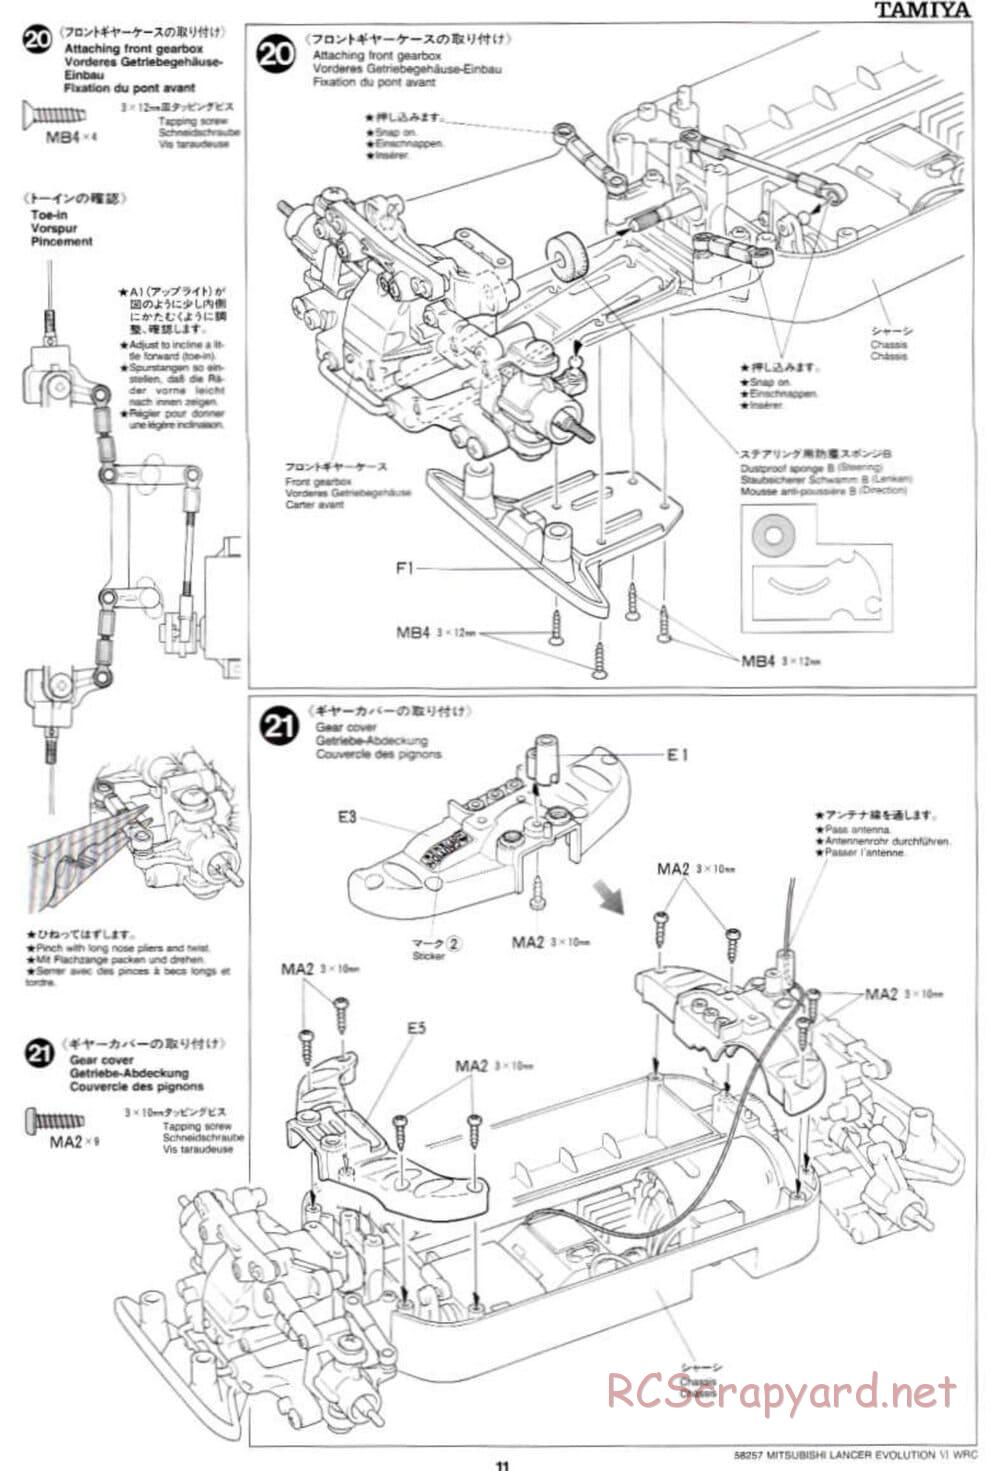 Tamiya - Mitsubishi Lancer Evolution VI WRC - TB-01 Chassis - Manual - Page 11